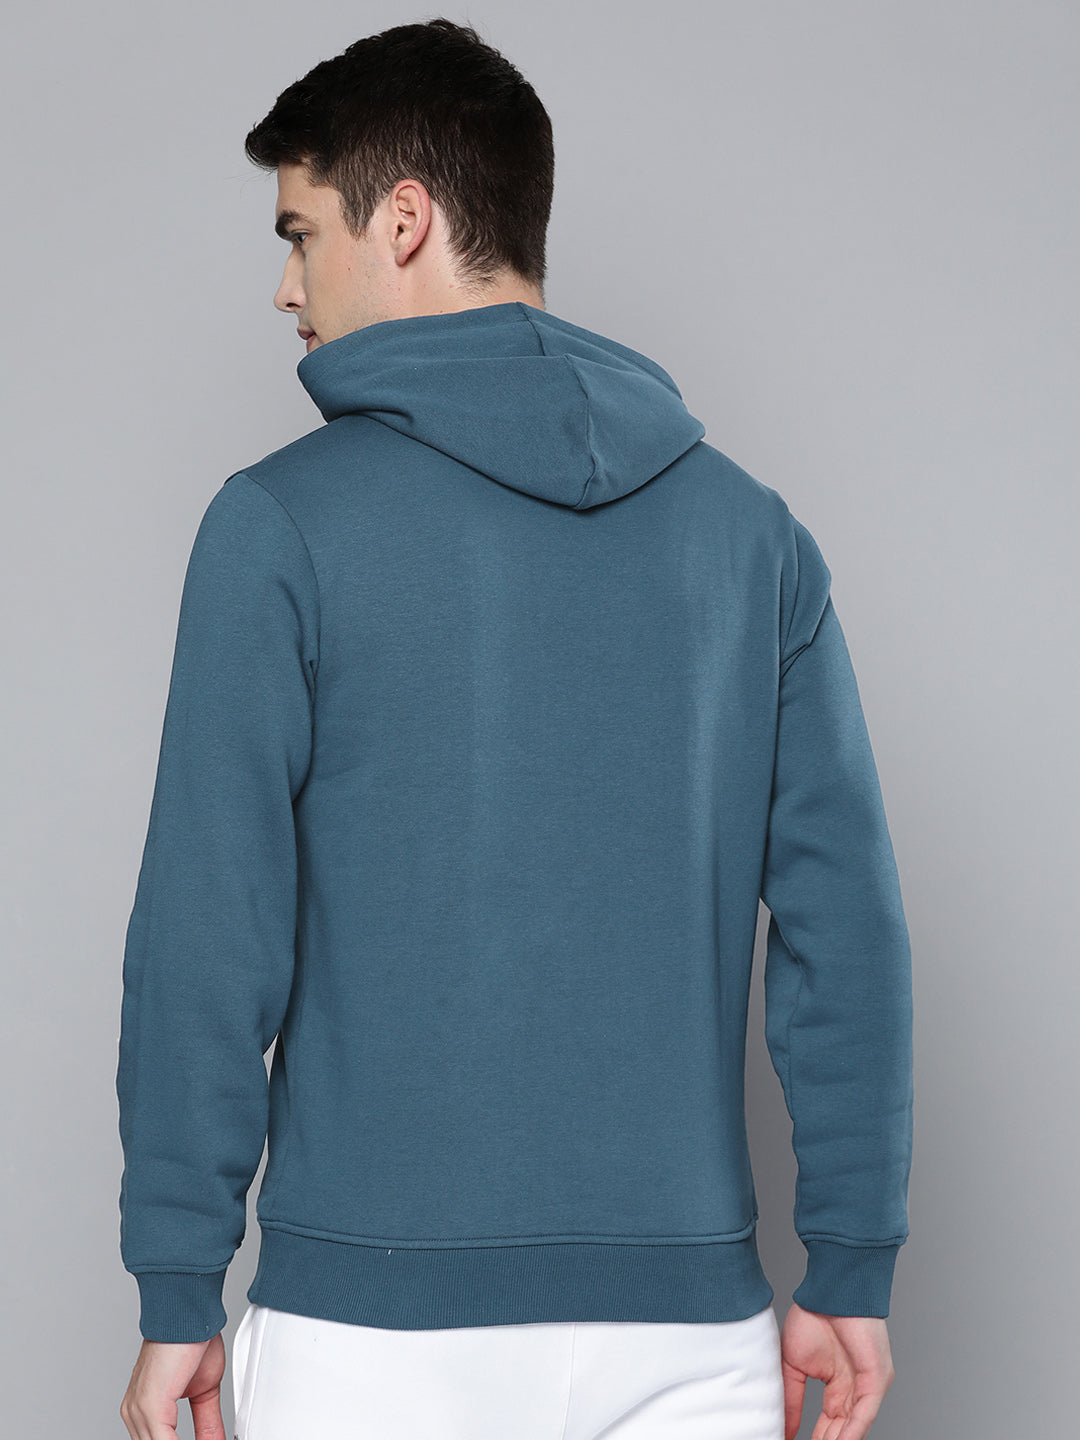 Alcis Men Teal Blue Printed Hooded Sweatshirt